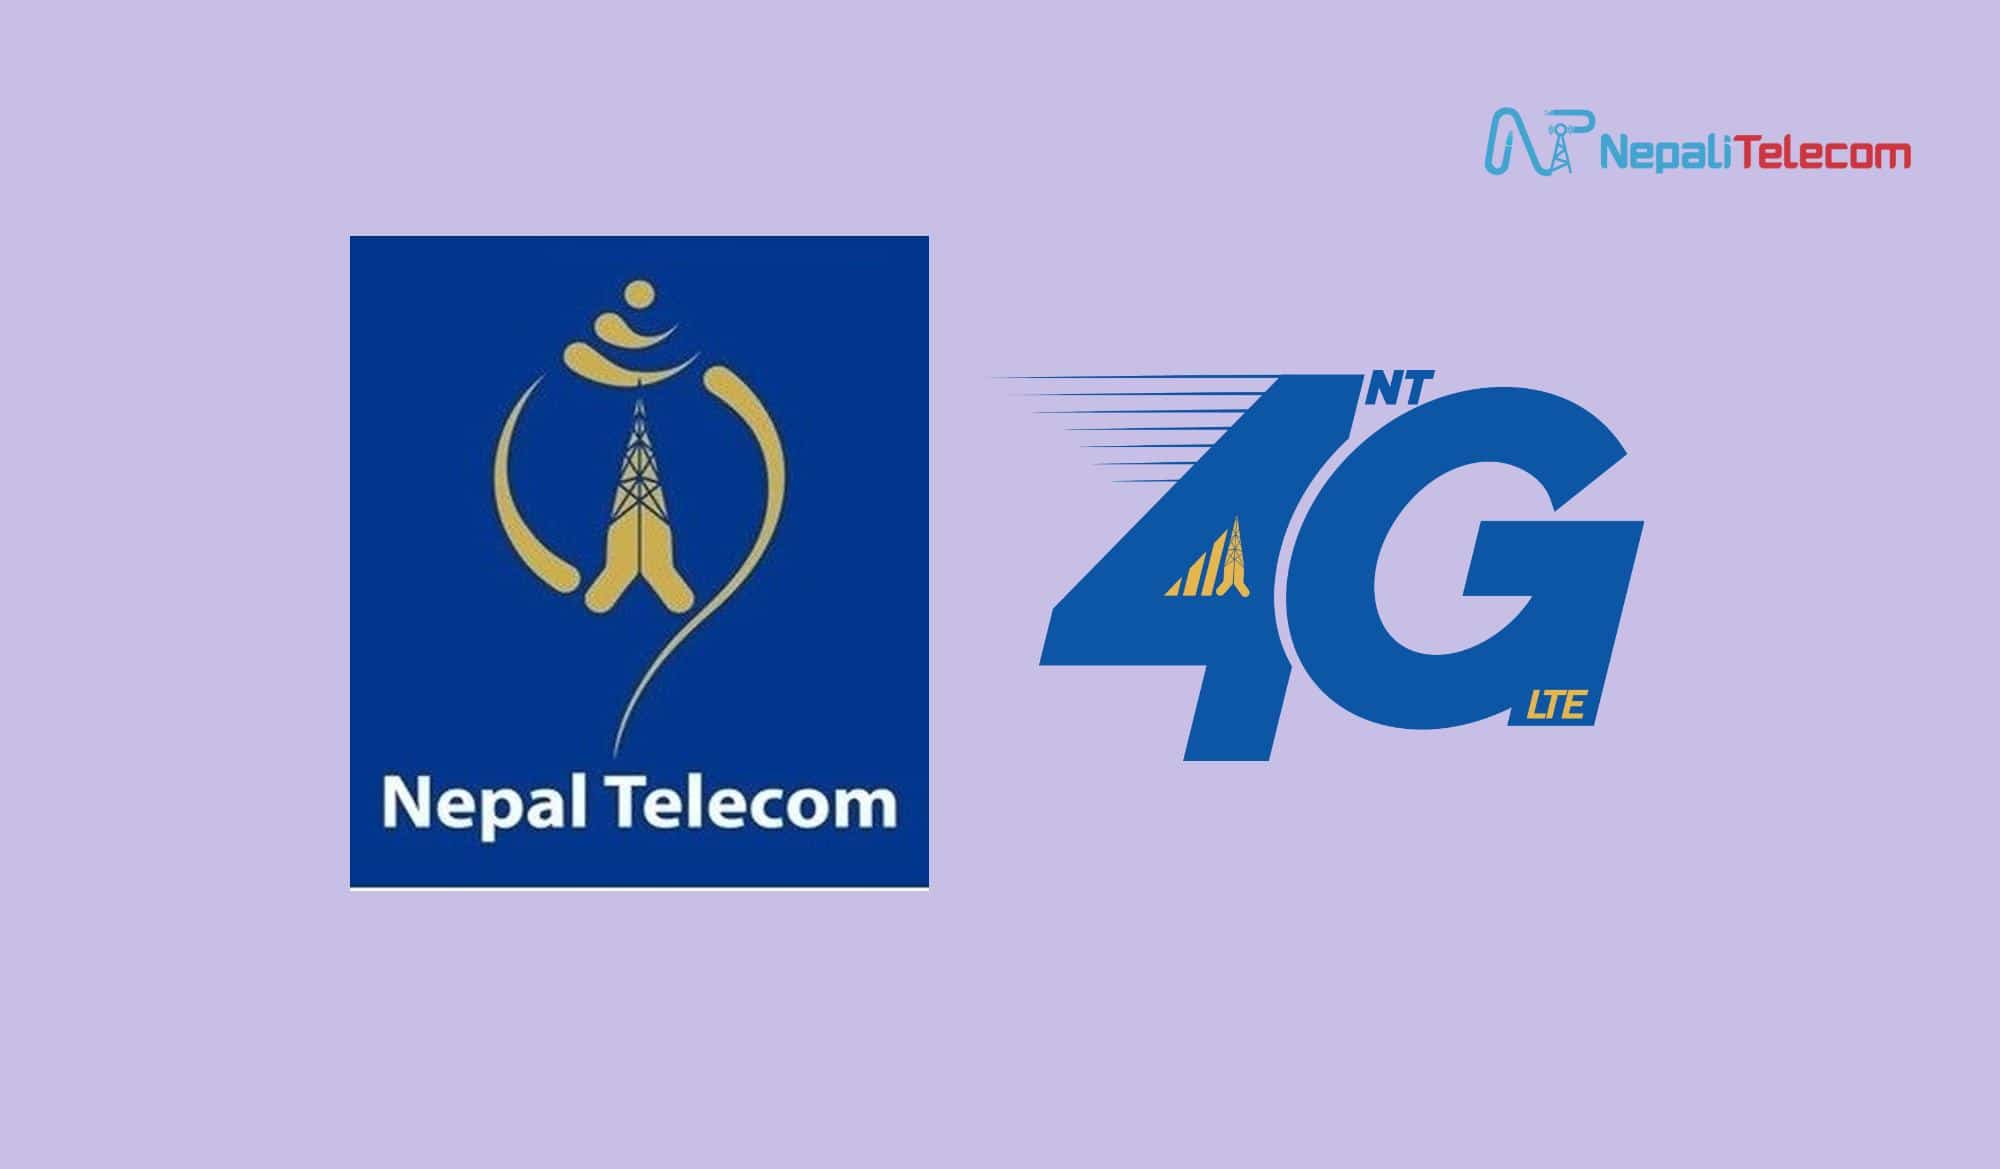 Nepal Telecom 4G LTE